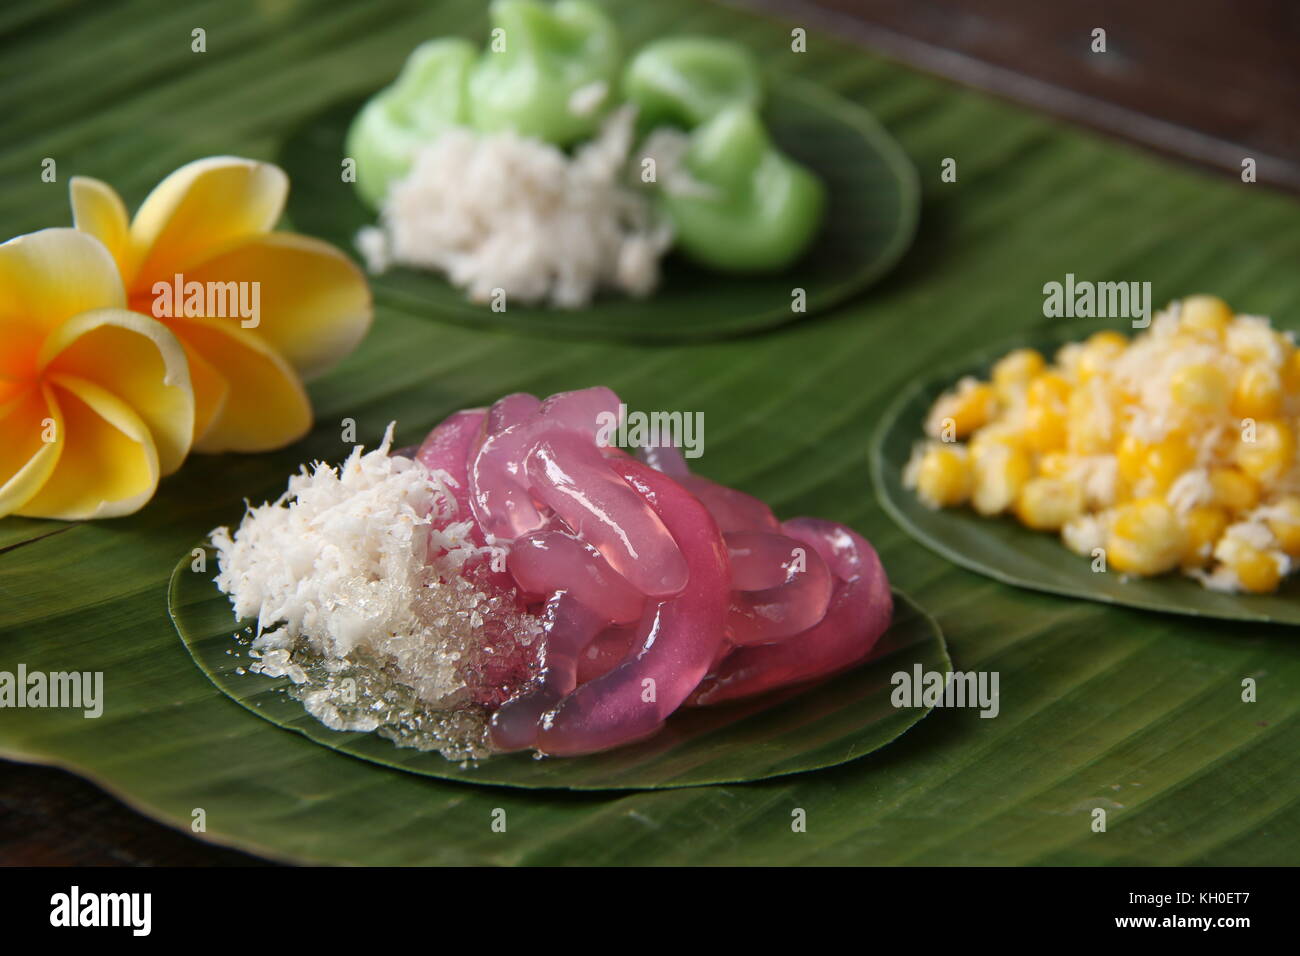 Jaja giling, stile balinese tradizionale snack di tapioca rosa tagliatelle con cocco grattugiato e zucchero Foto Stock